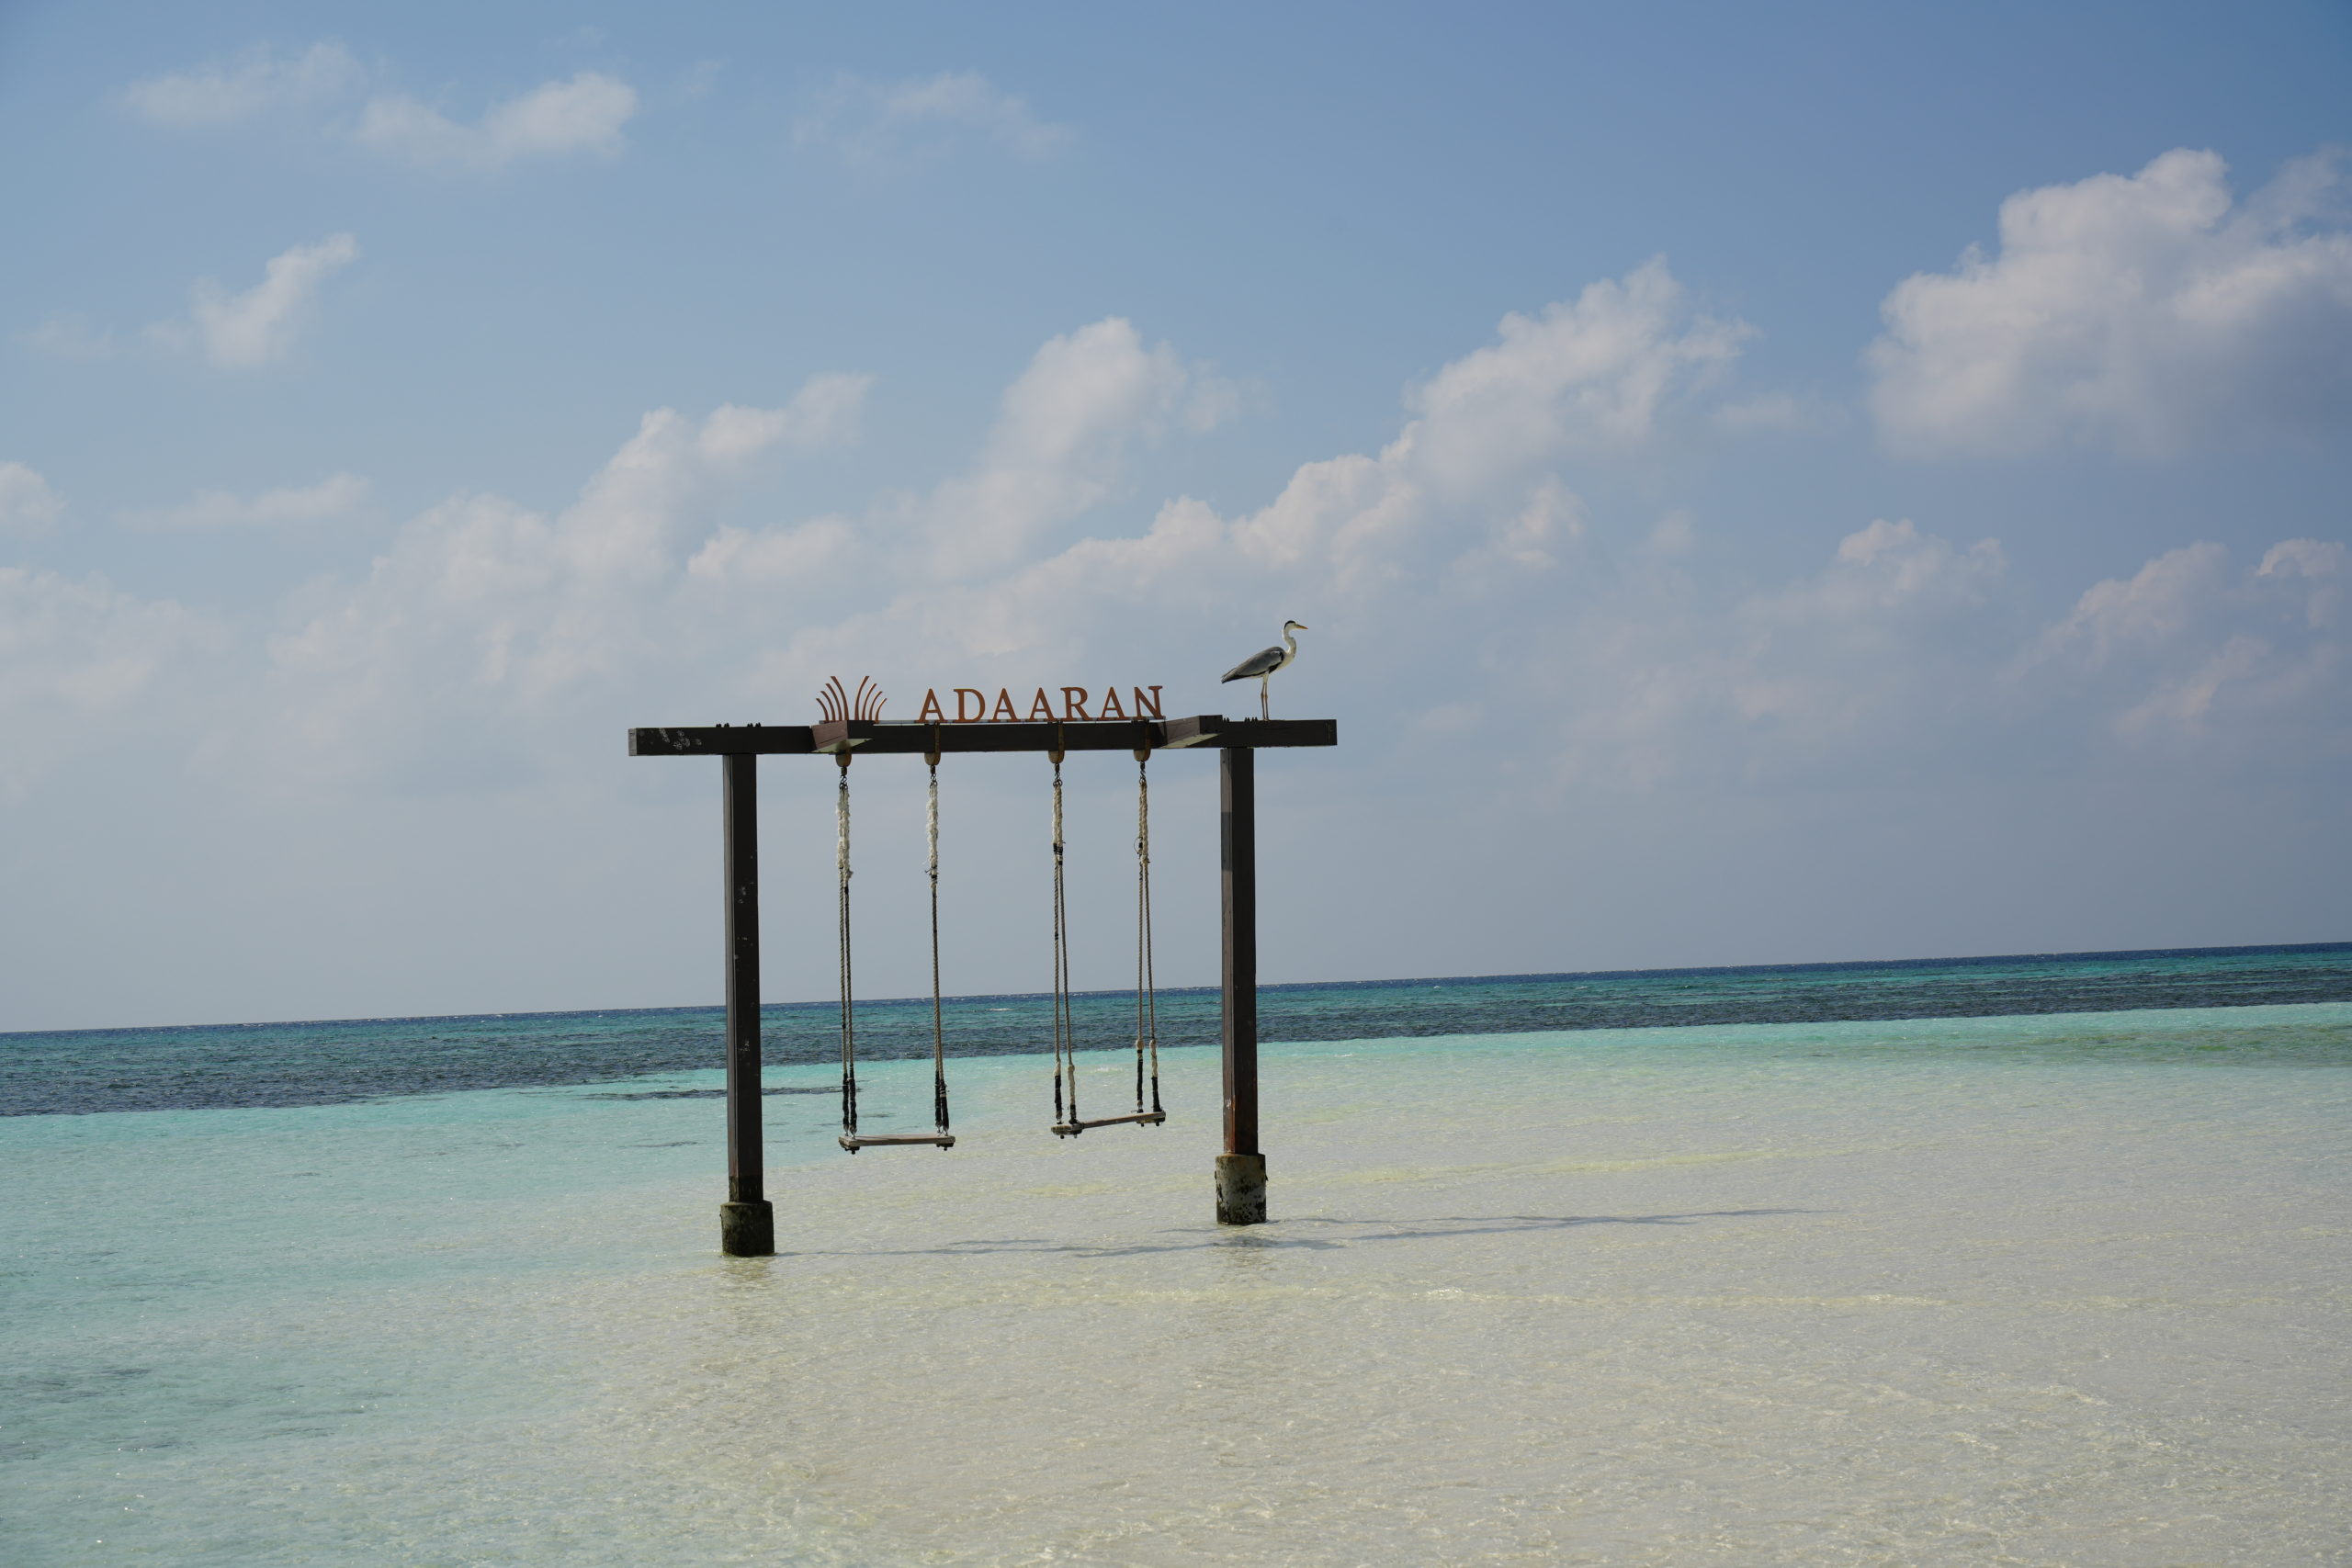 Sind zwei Wochen Malediven auszuhalten? (Malediven Urlaub Teil 2)